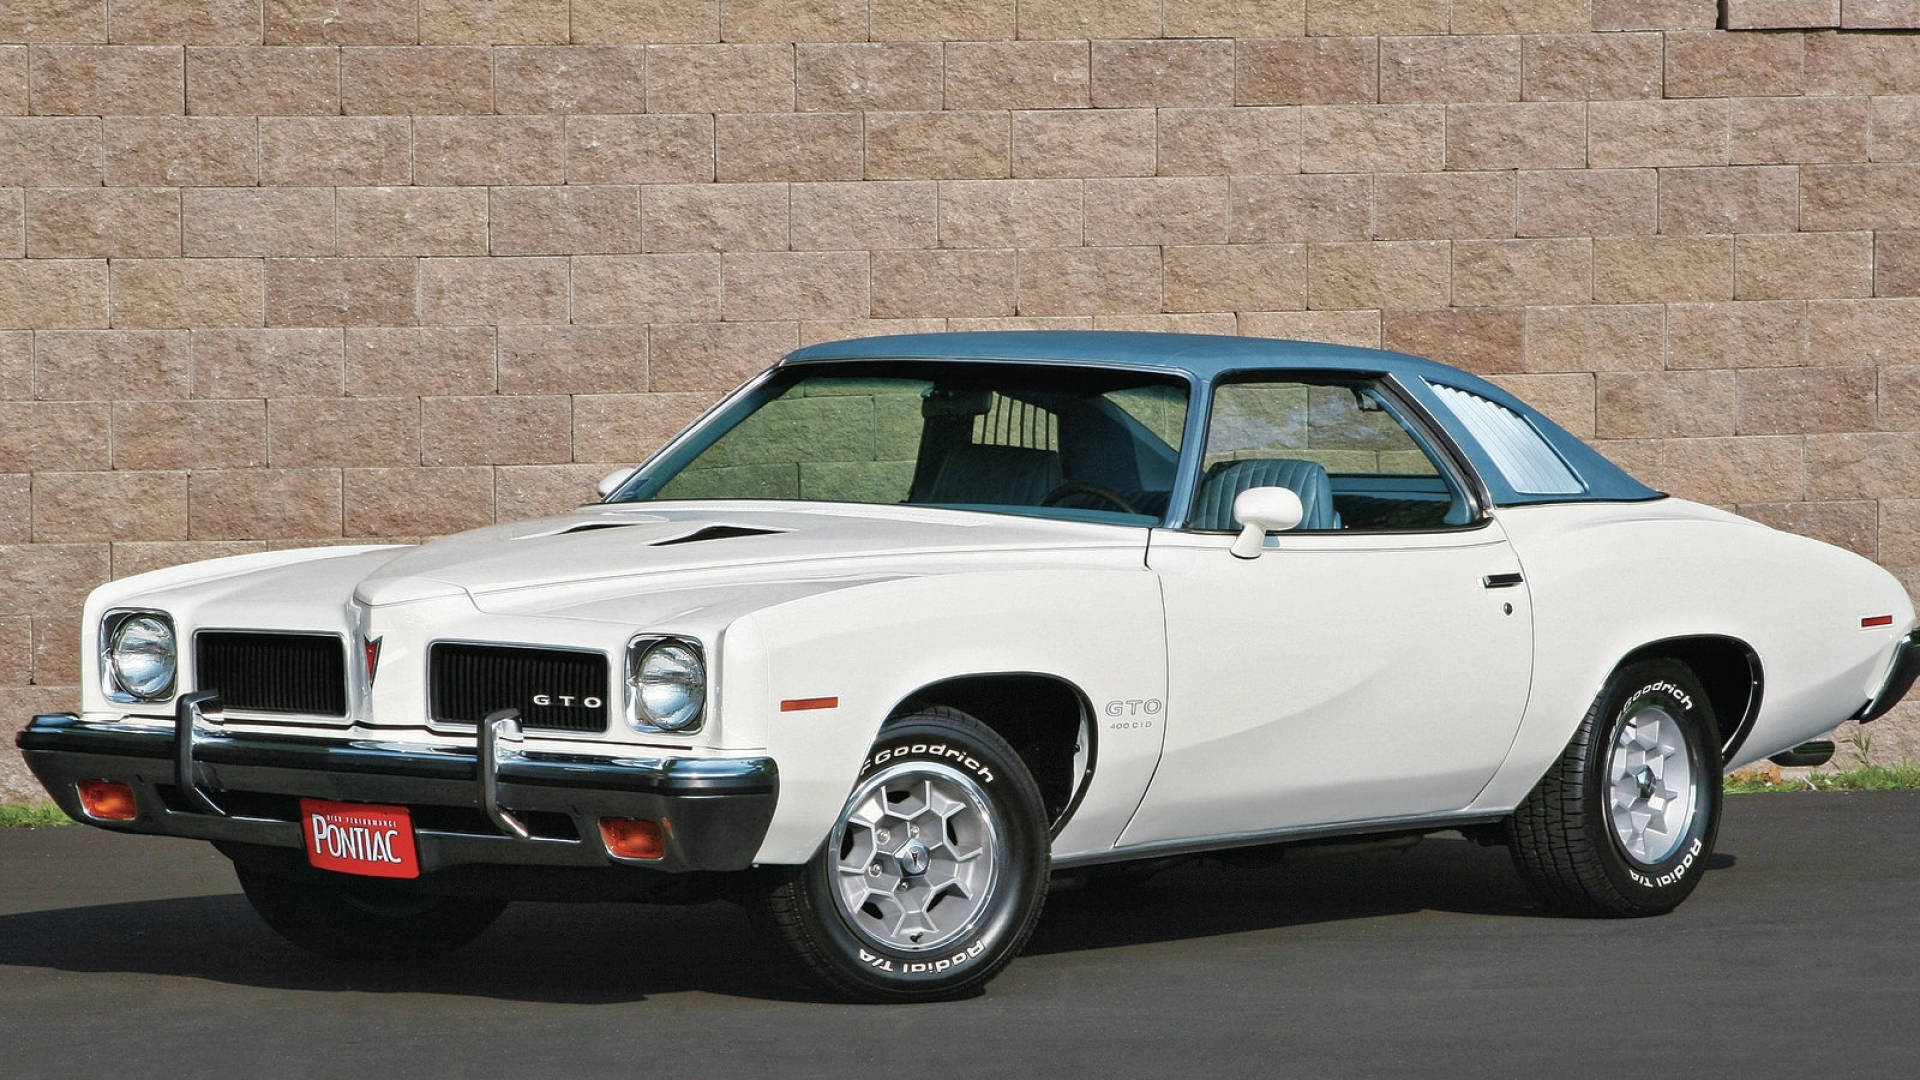 White 1973 Pontiac Gto Background